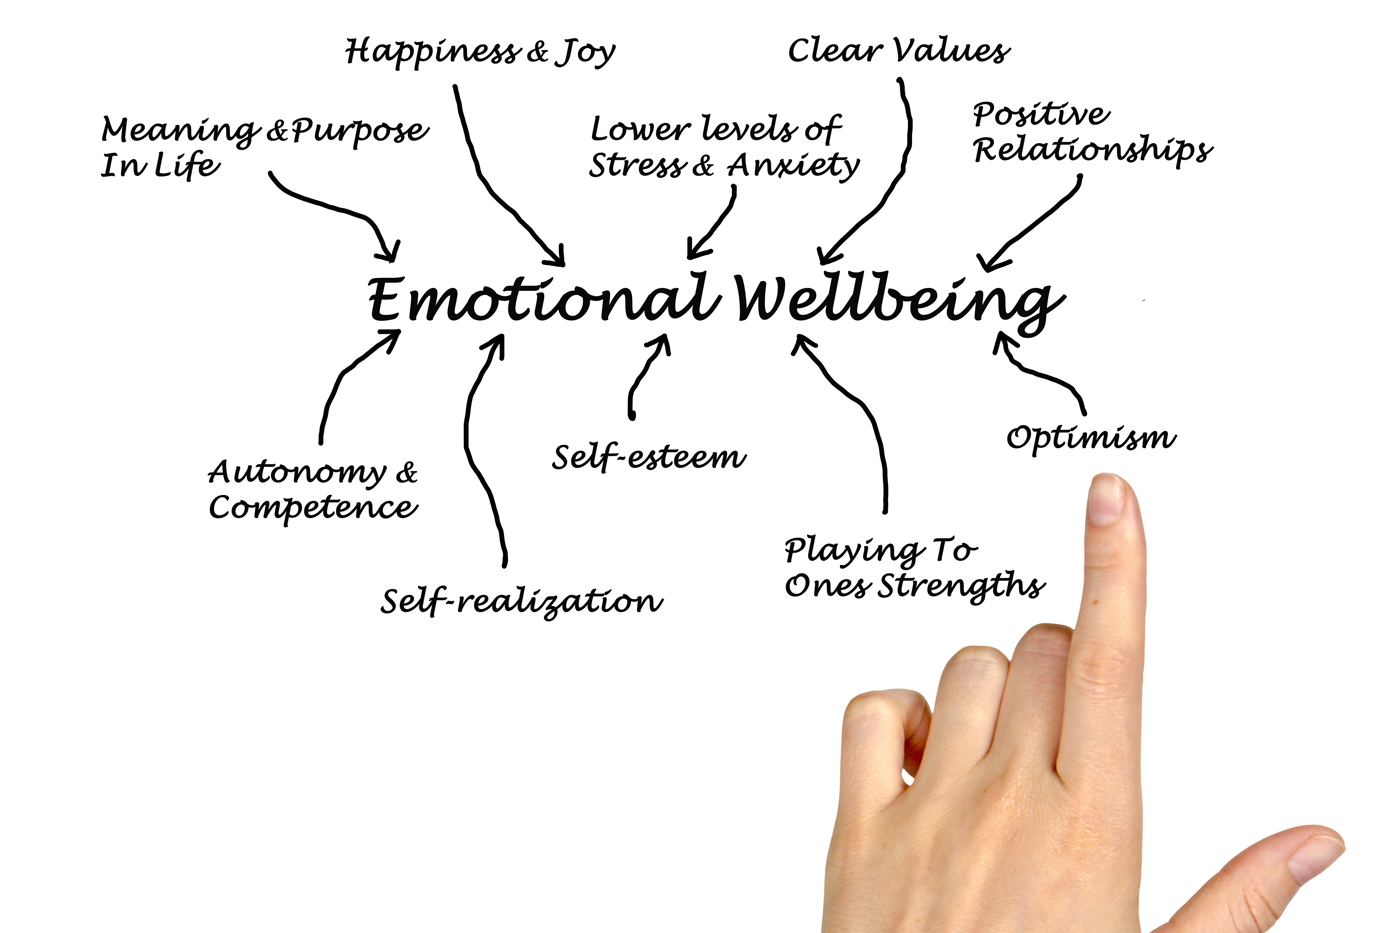 emotional wellbeing